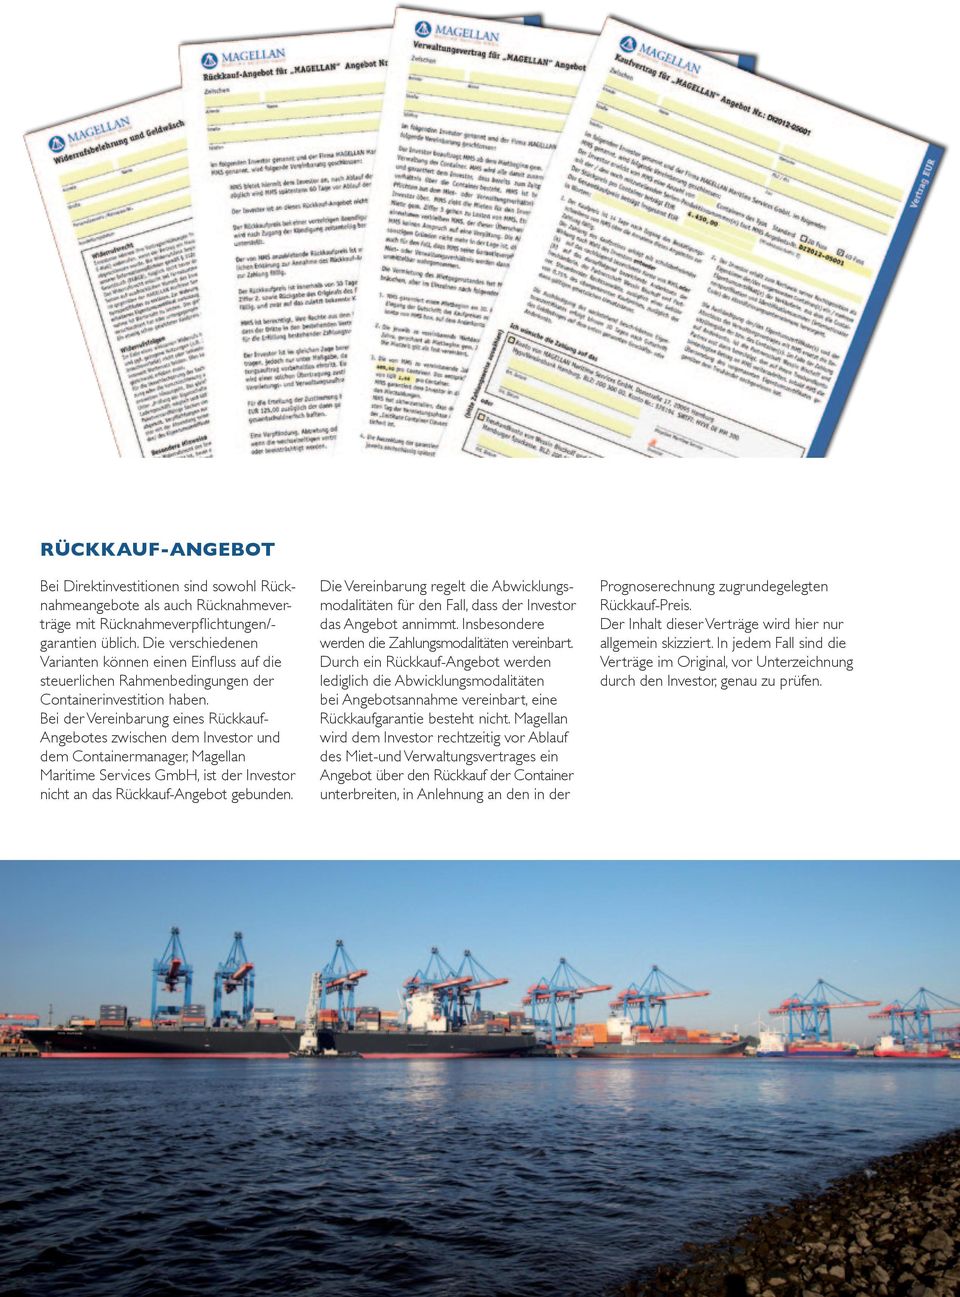 Bei der Vereinbarung eines Rückkauf- Angebotes zwischen dem Investor und dem Containermanager, Magellan Maritime Services GmbH, ist der Investor nicht an das Rückkauf-Angebot gebunden.